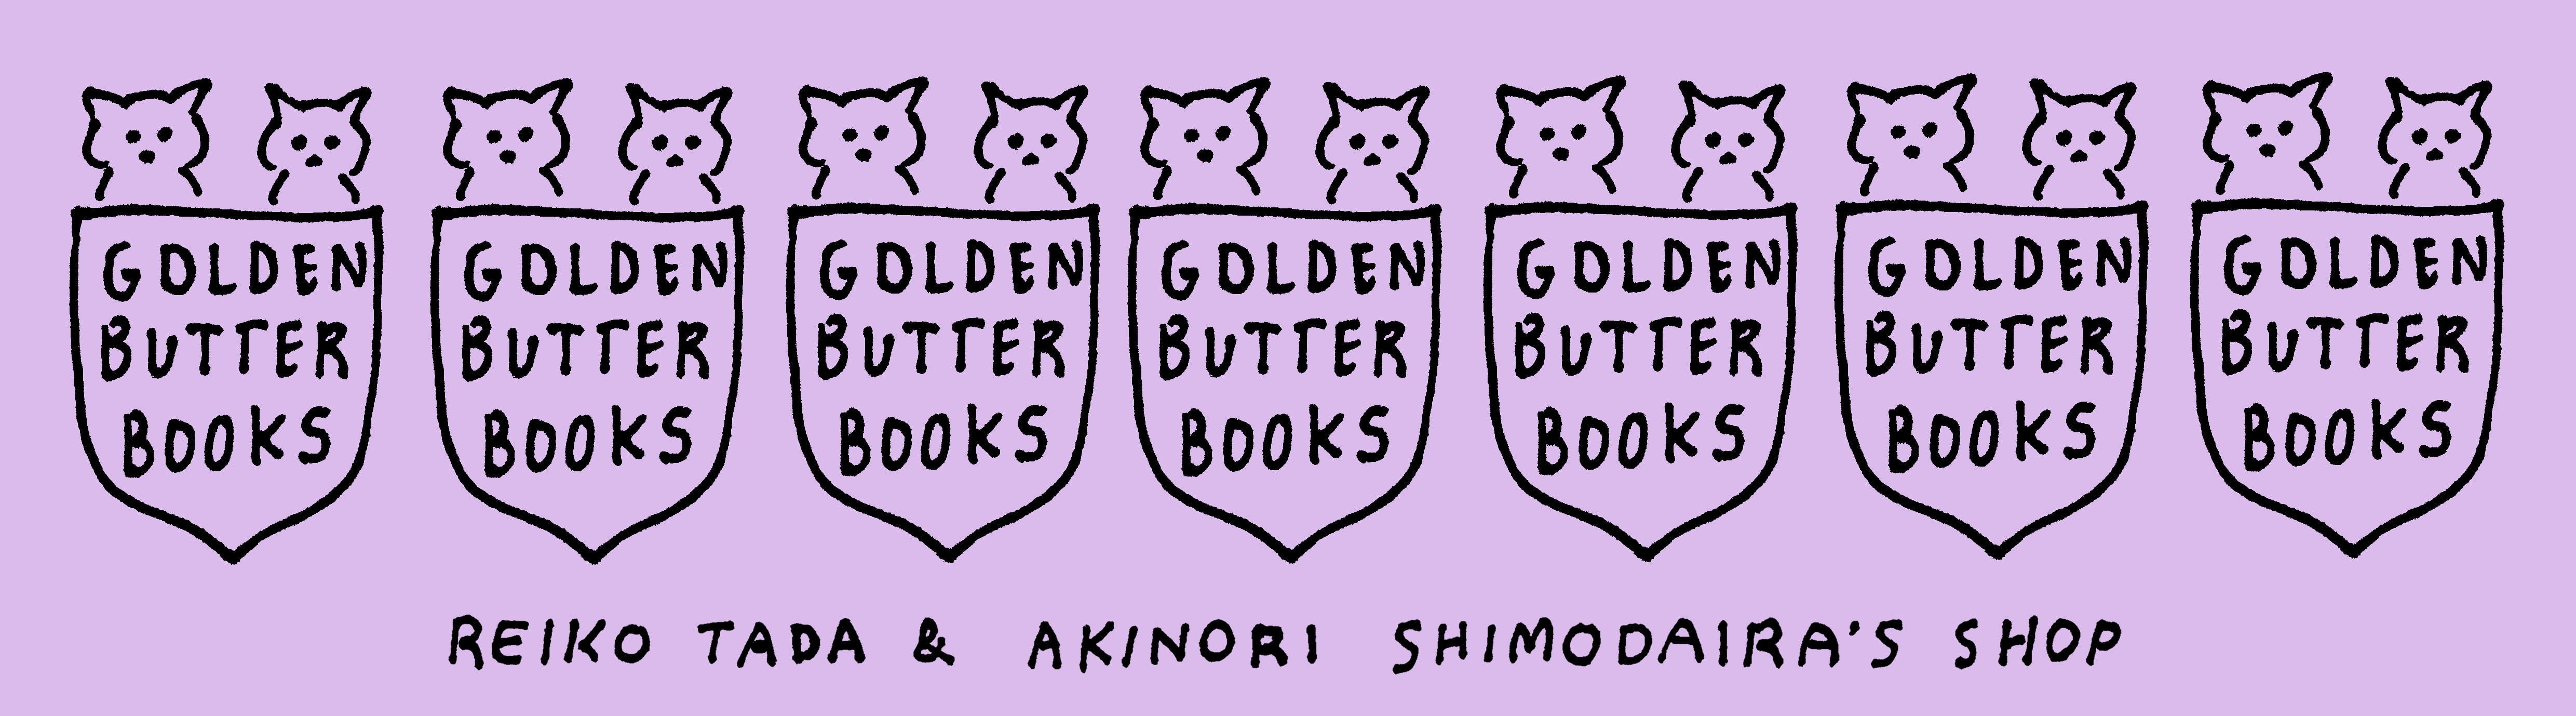 GOLDEN BUTTER BOOKS